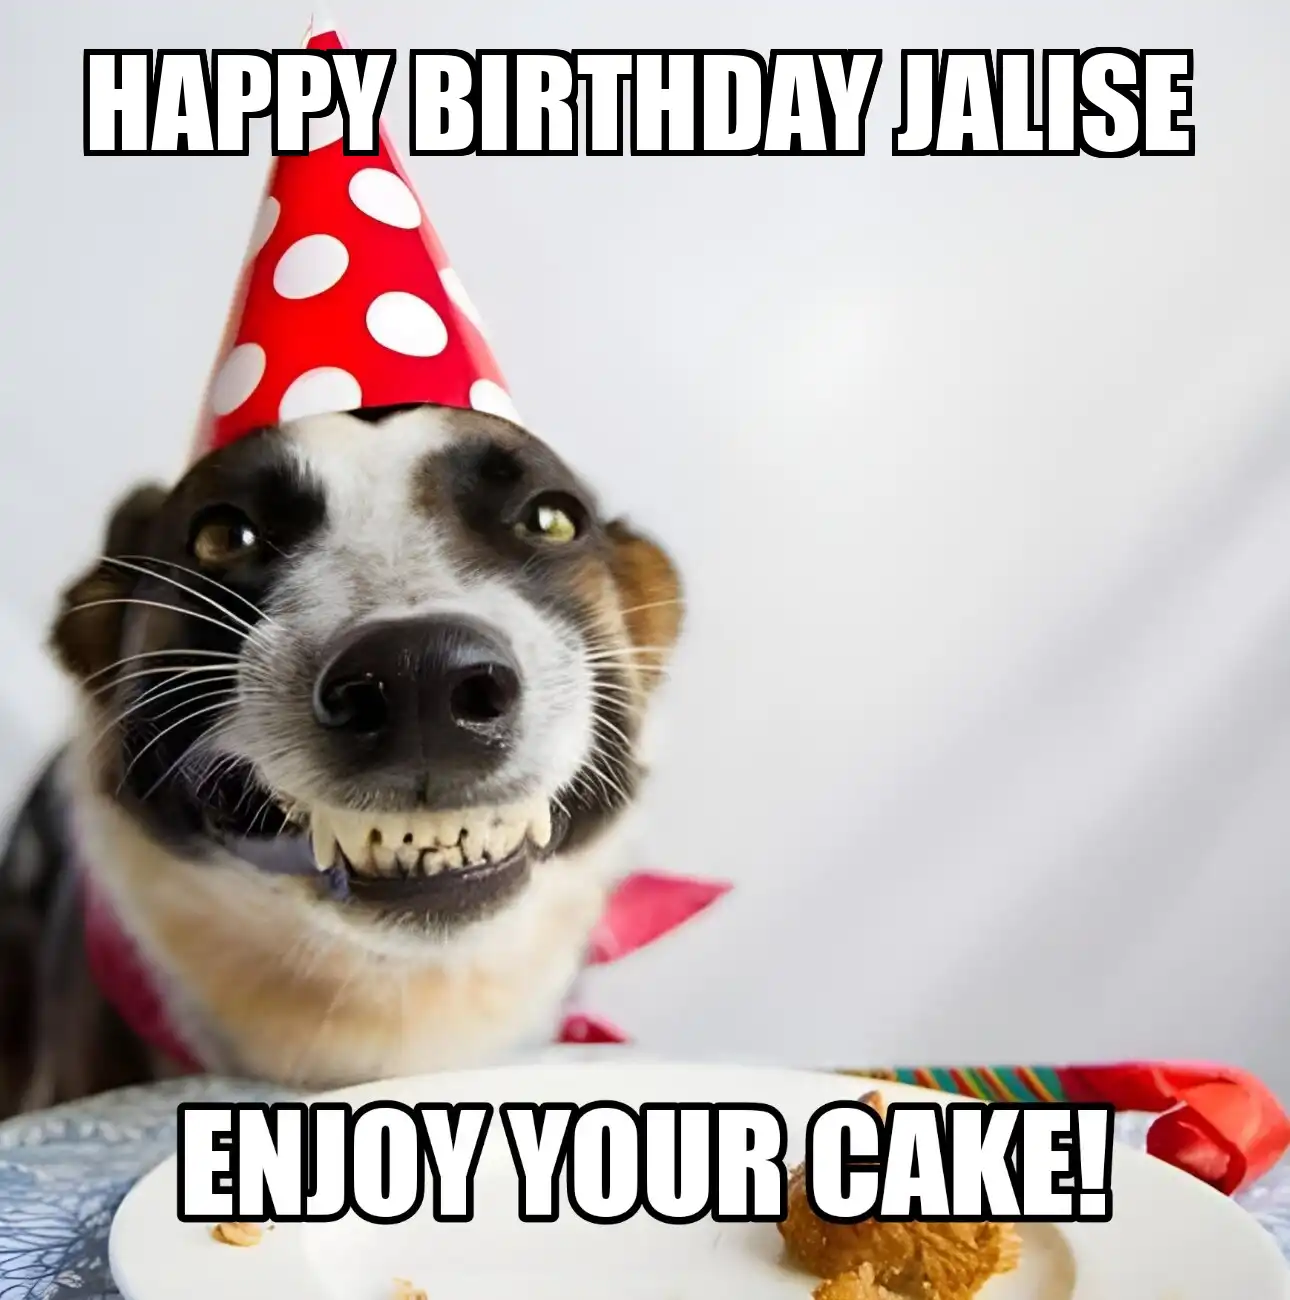 Happy Birthday Jalise Enjoy Your Cake Dog Meme